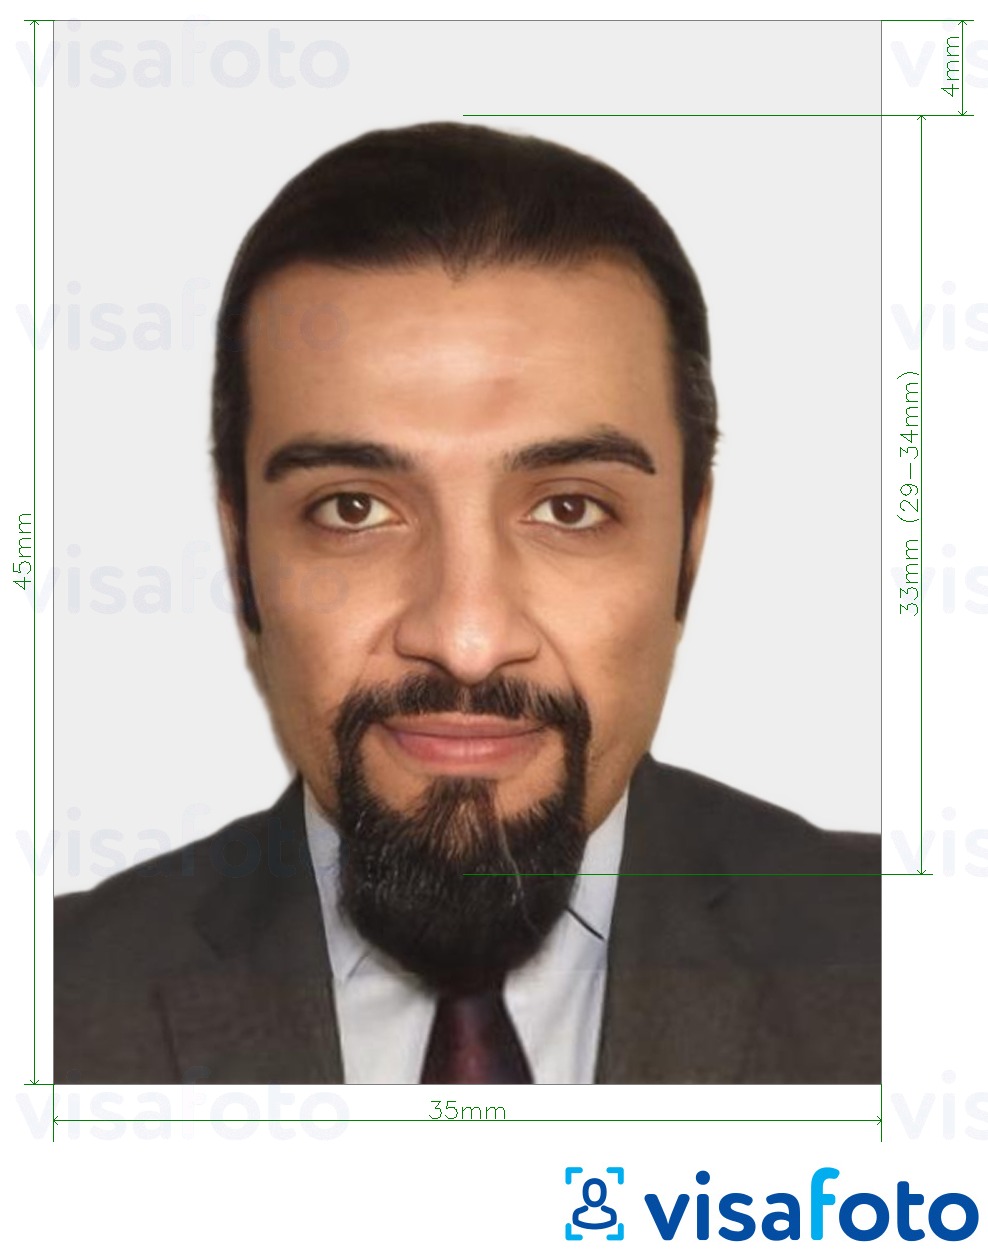 Ejemplo de foto para Documento nacional de identidad marroquí 35x45 mm (3,5x4,5 cm) con la especificación del tamaño exacto